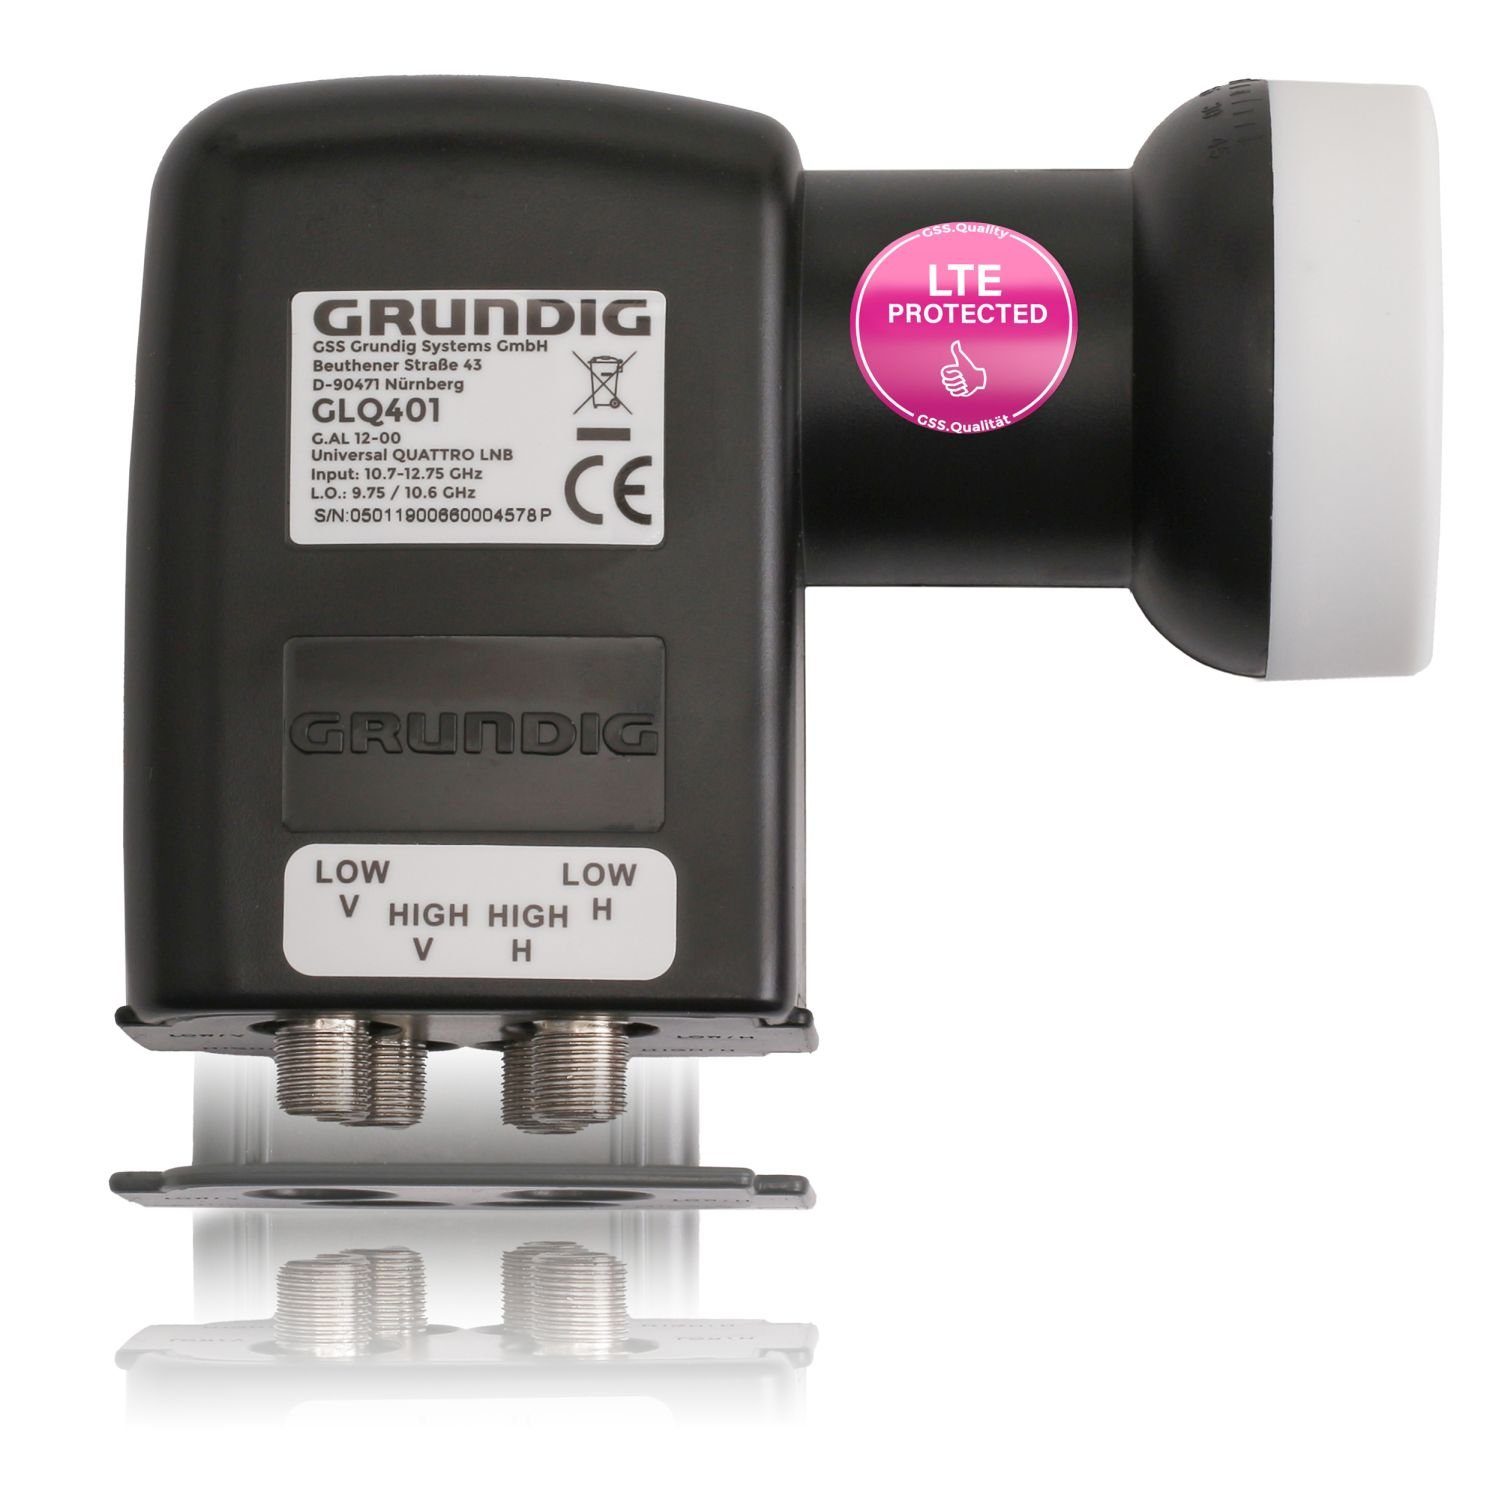 GSS GLQ 401 für Universal-Quattro-LNB + LTE Wetterschutzkappe, schwarz & hitzebeständig) Aufdrehhilfe kälte- Multischalter, Filter, (mit